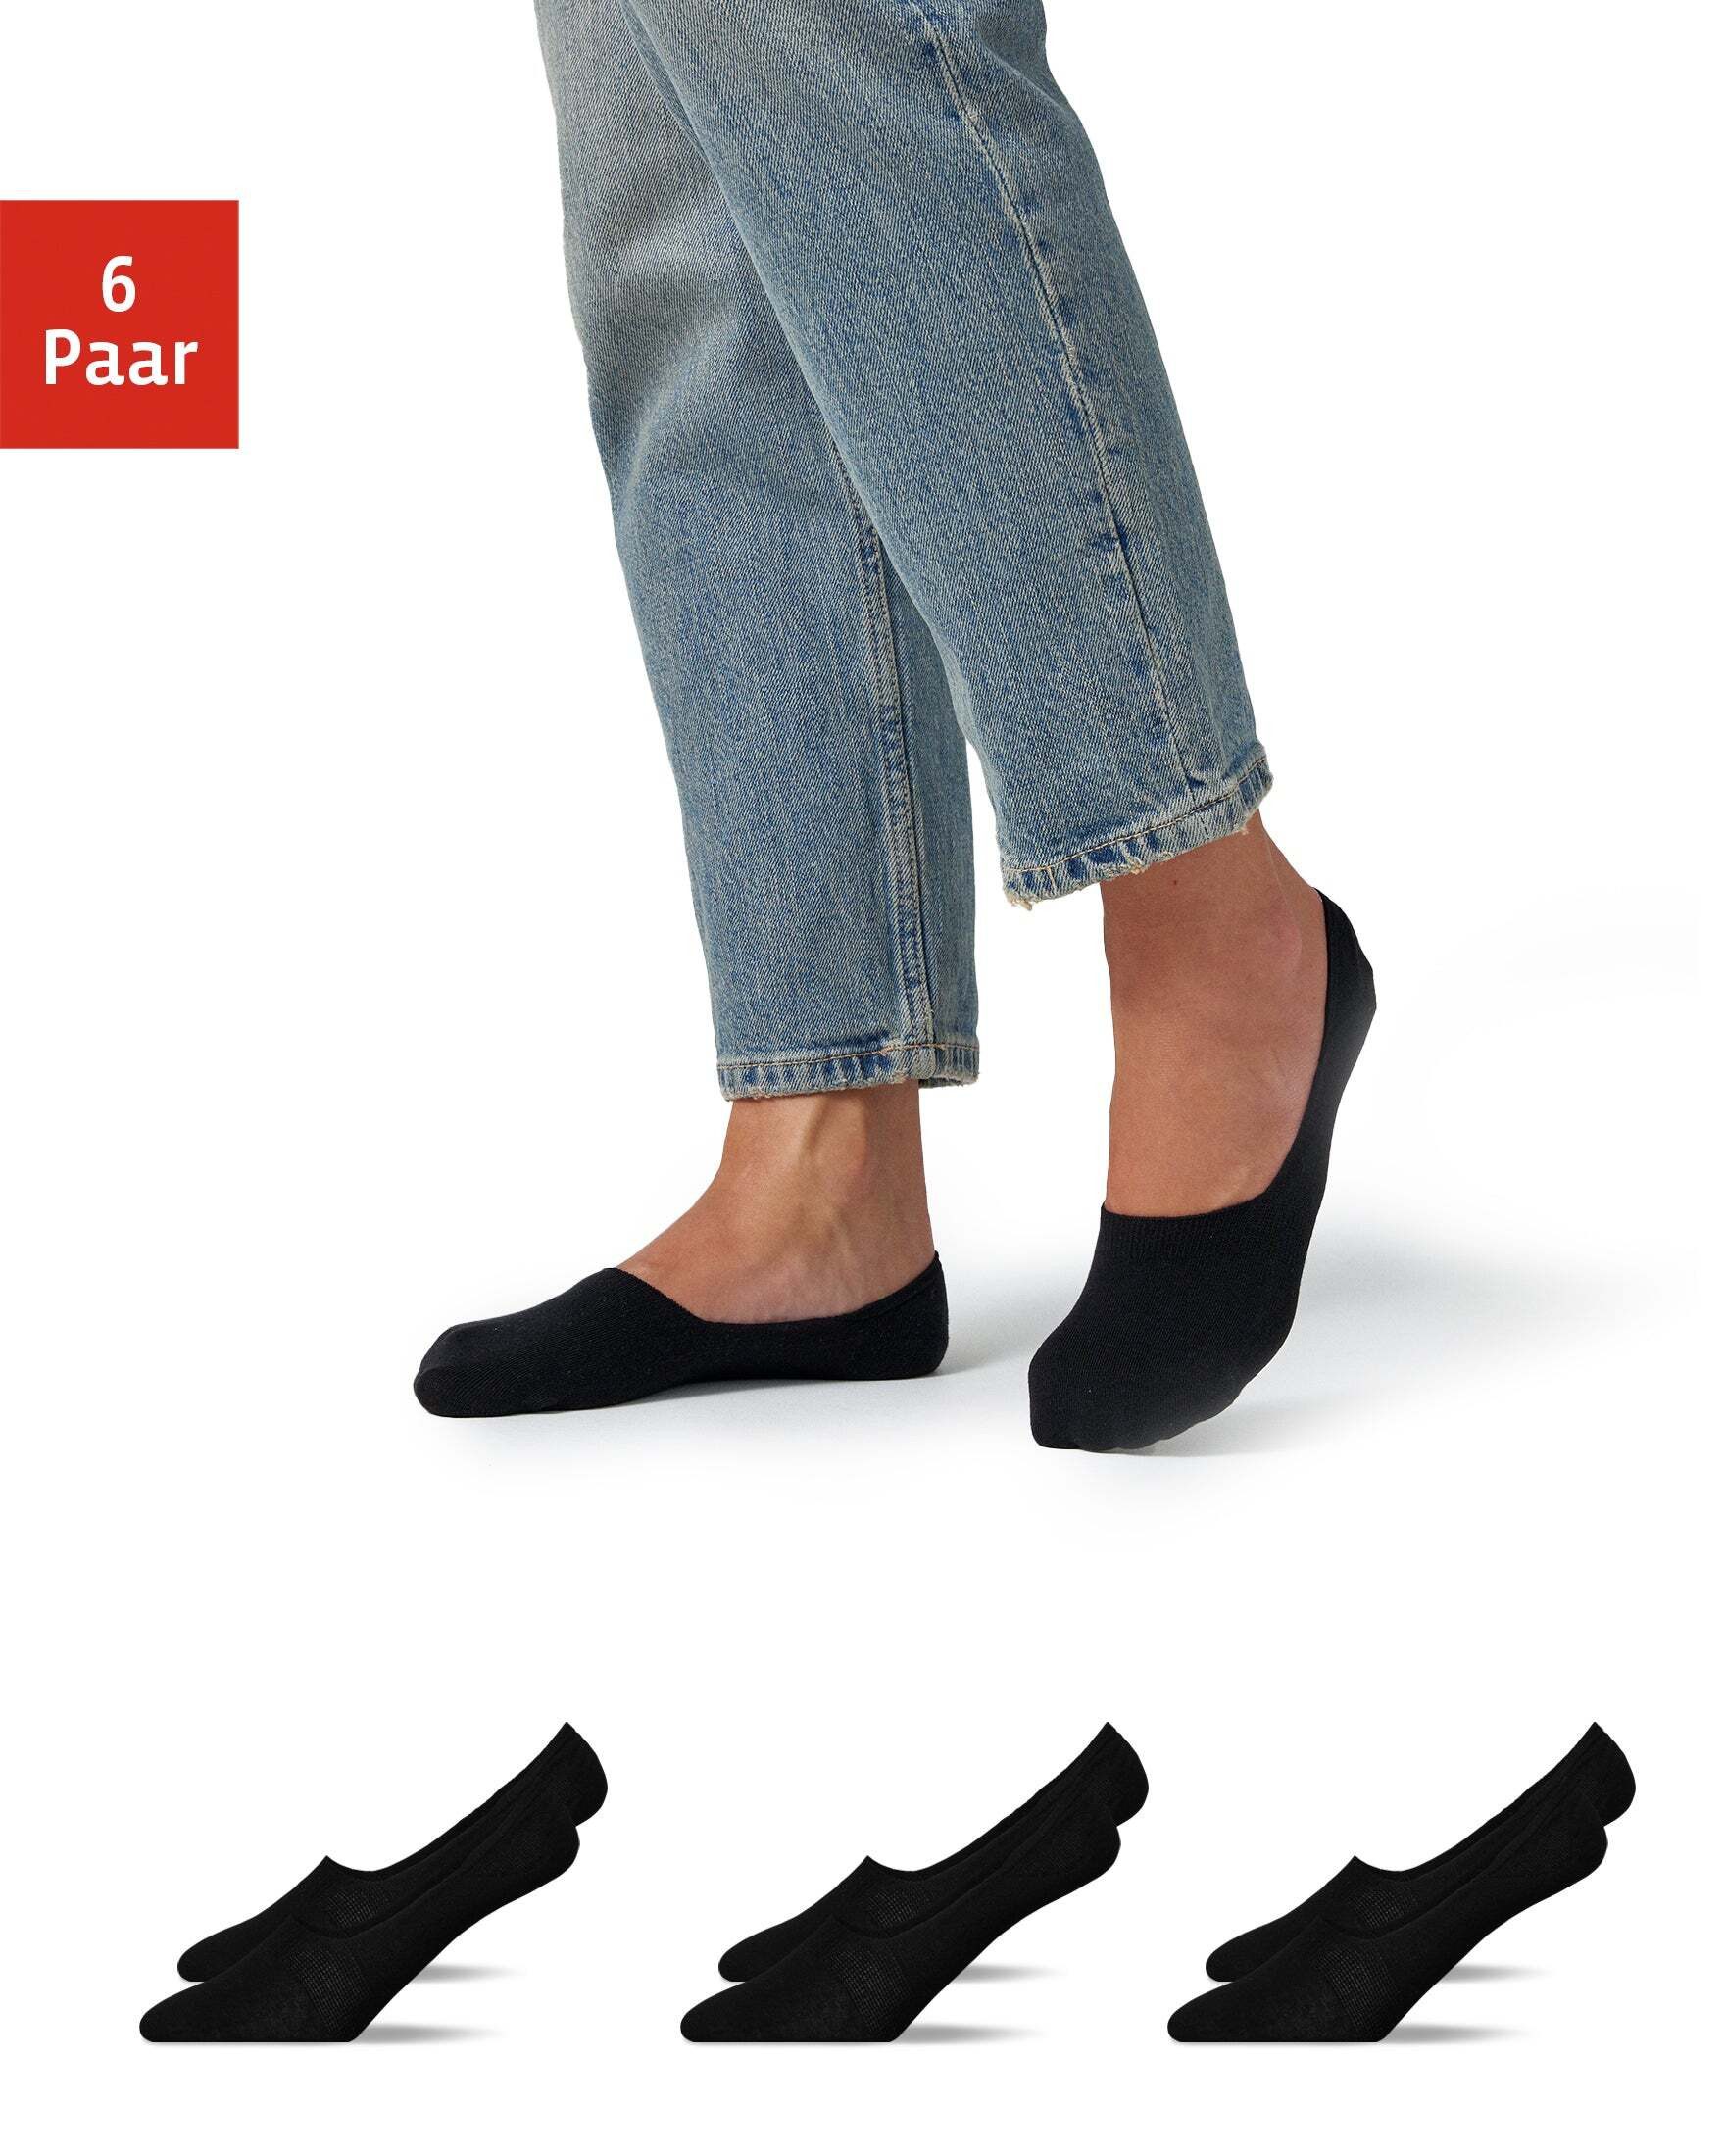 SNOCKS Füßlinge Invisible Socks Sneaker Socken Damen & Herren (6-Paar) mit Anti-Rutsch Pad und ohne Naht auf den Zehen